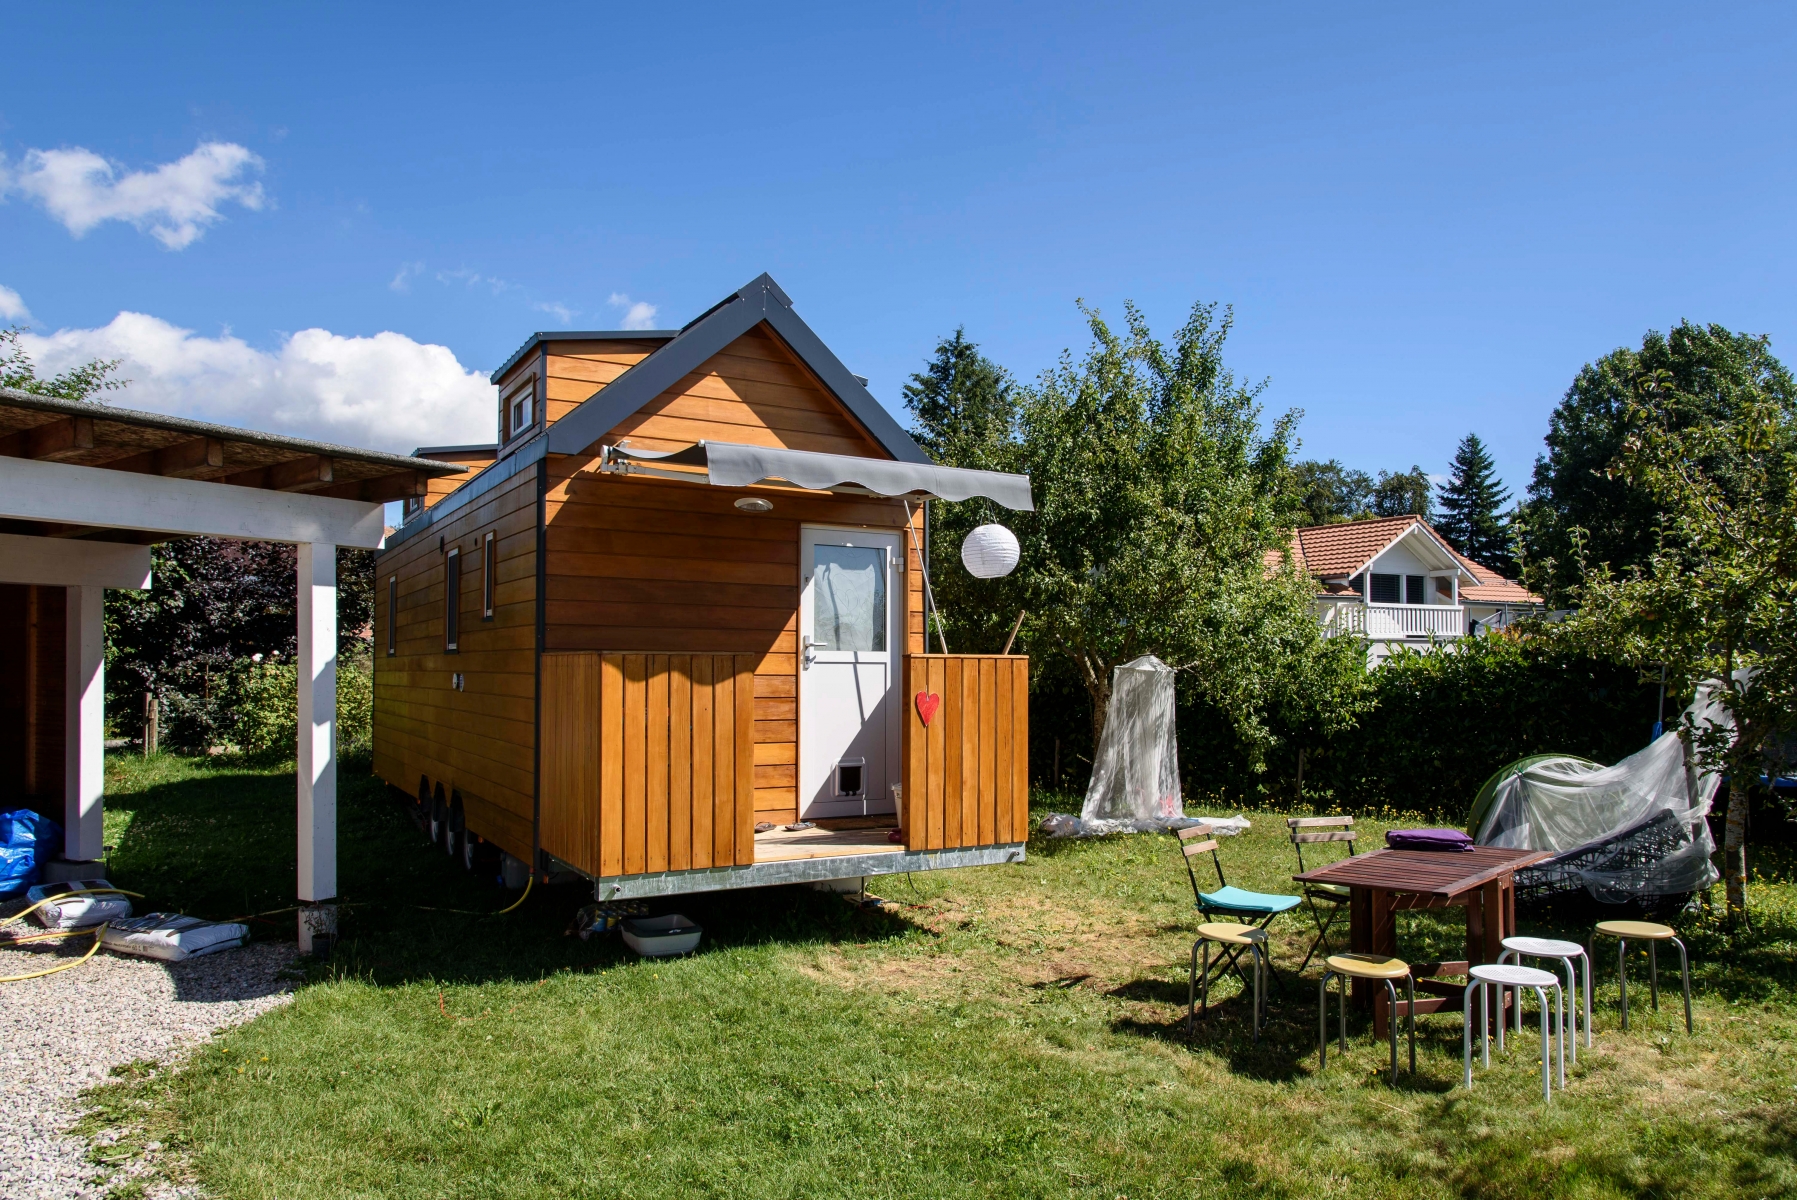 Saubraz, vendredi 2907.2016, une tiny house est installée sur un terrain d'habitation, Karin Zurbrugg en est l'heureuse propriétaire, photos Cédric Sandoz